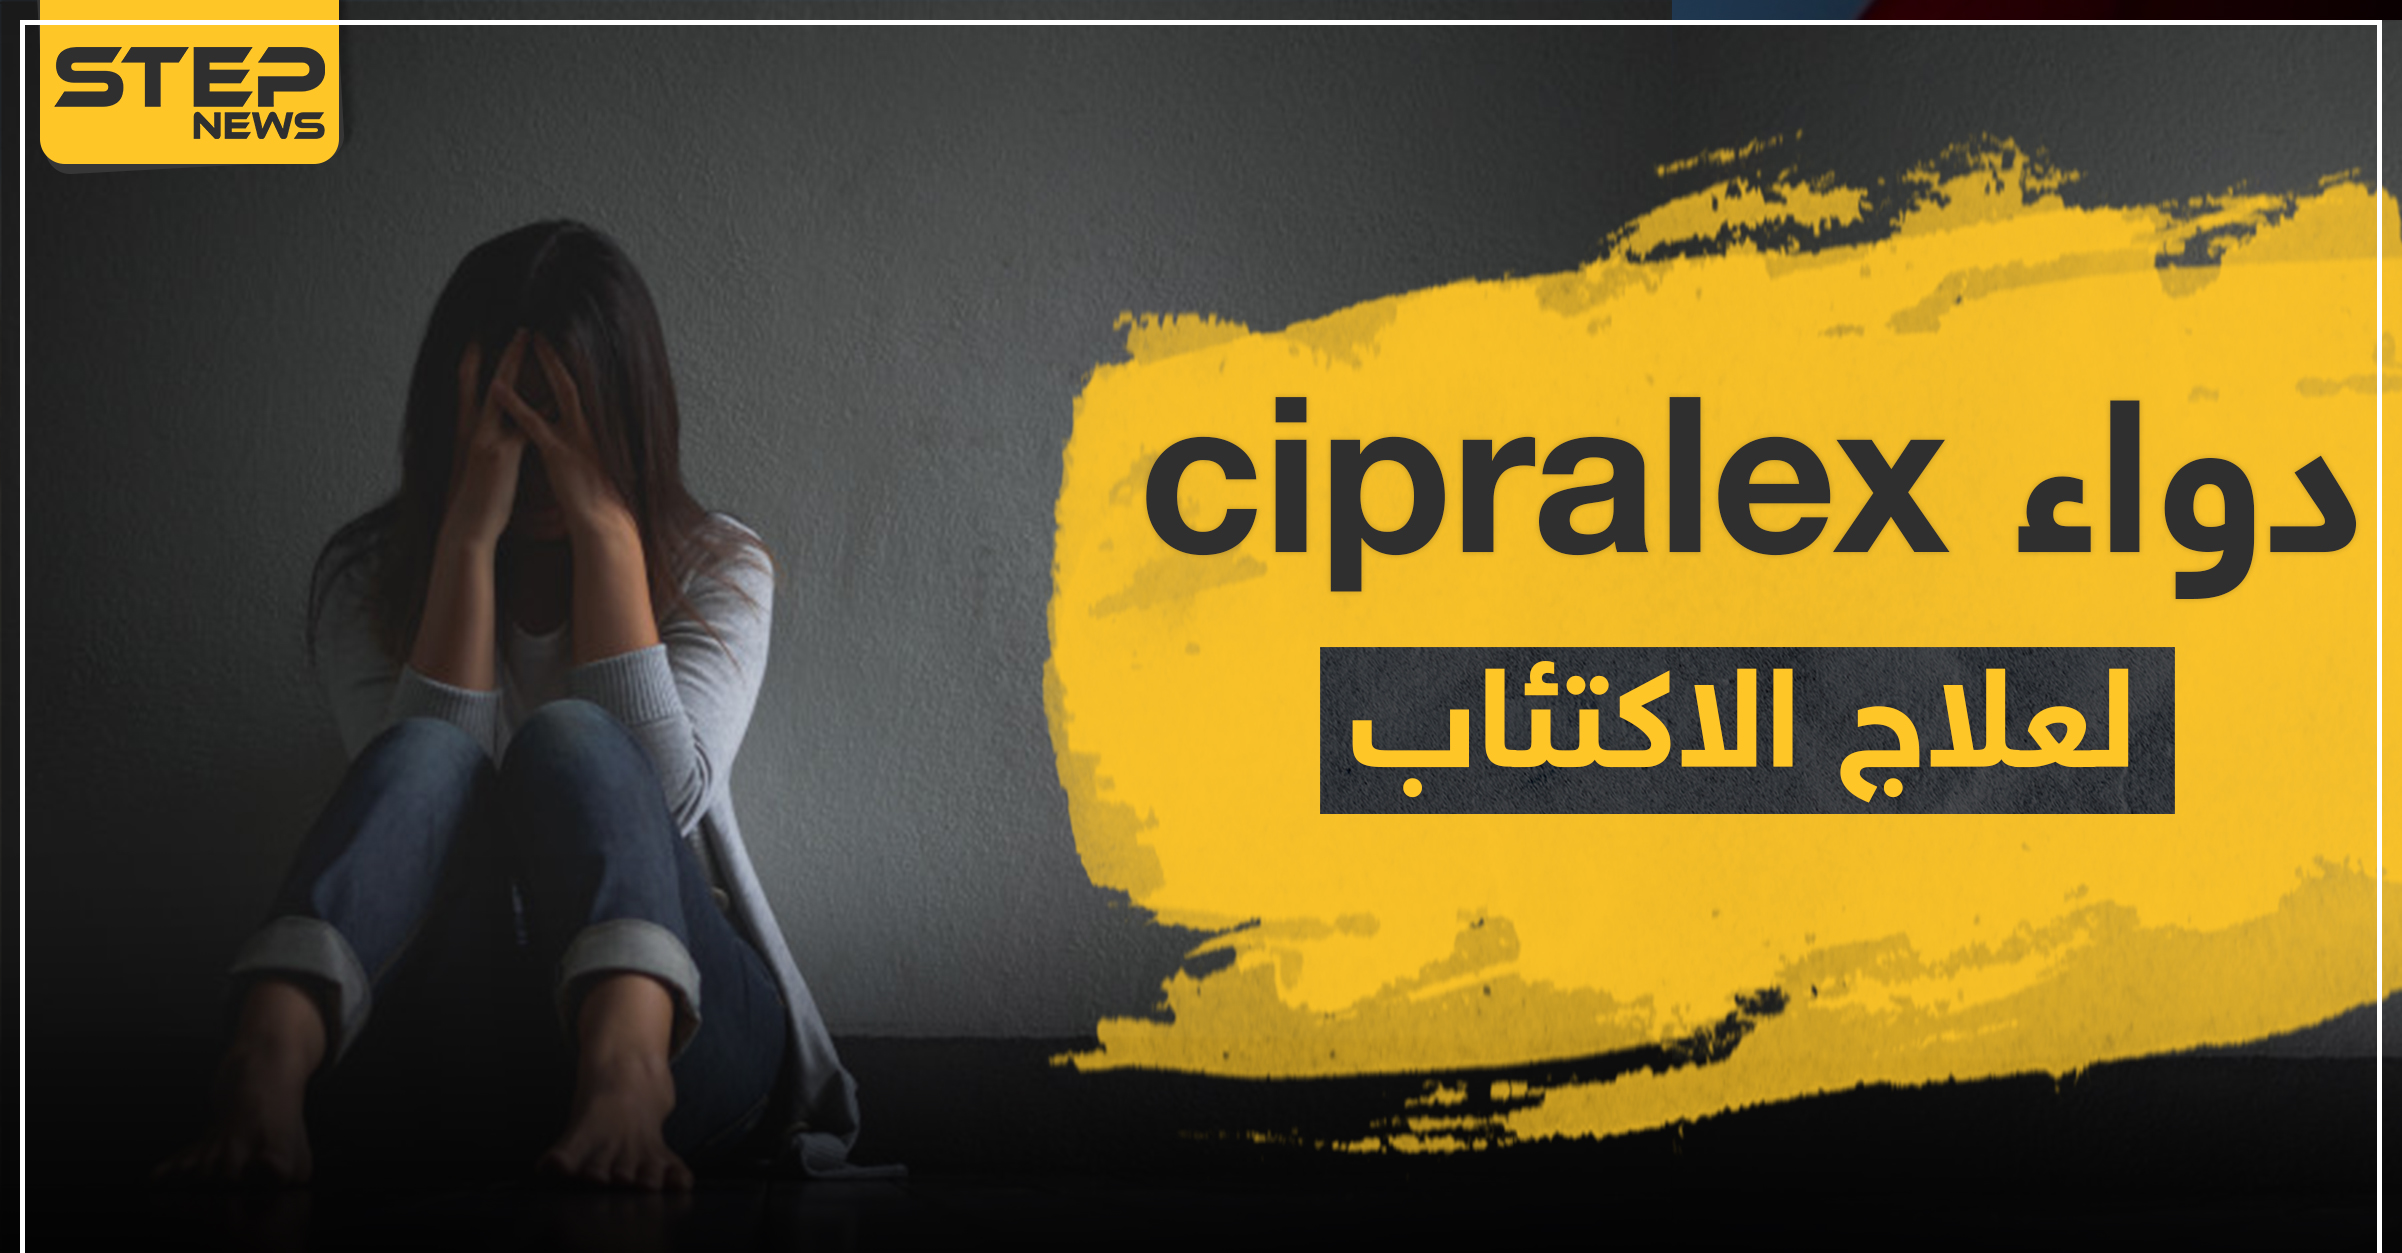 دواء cipralex لعلاج الاكتئاب